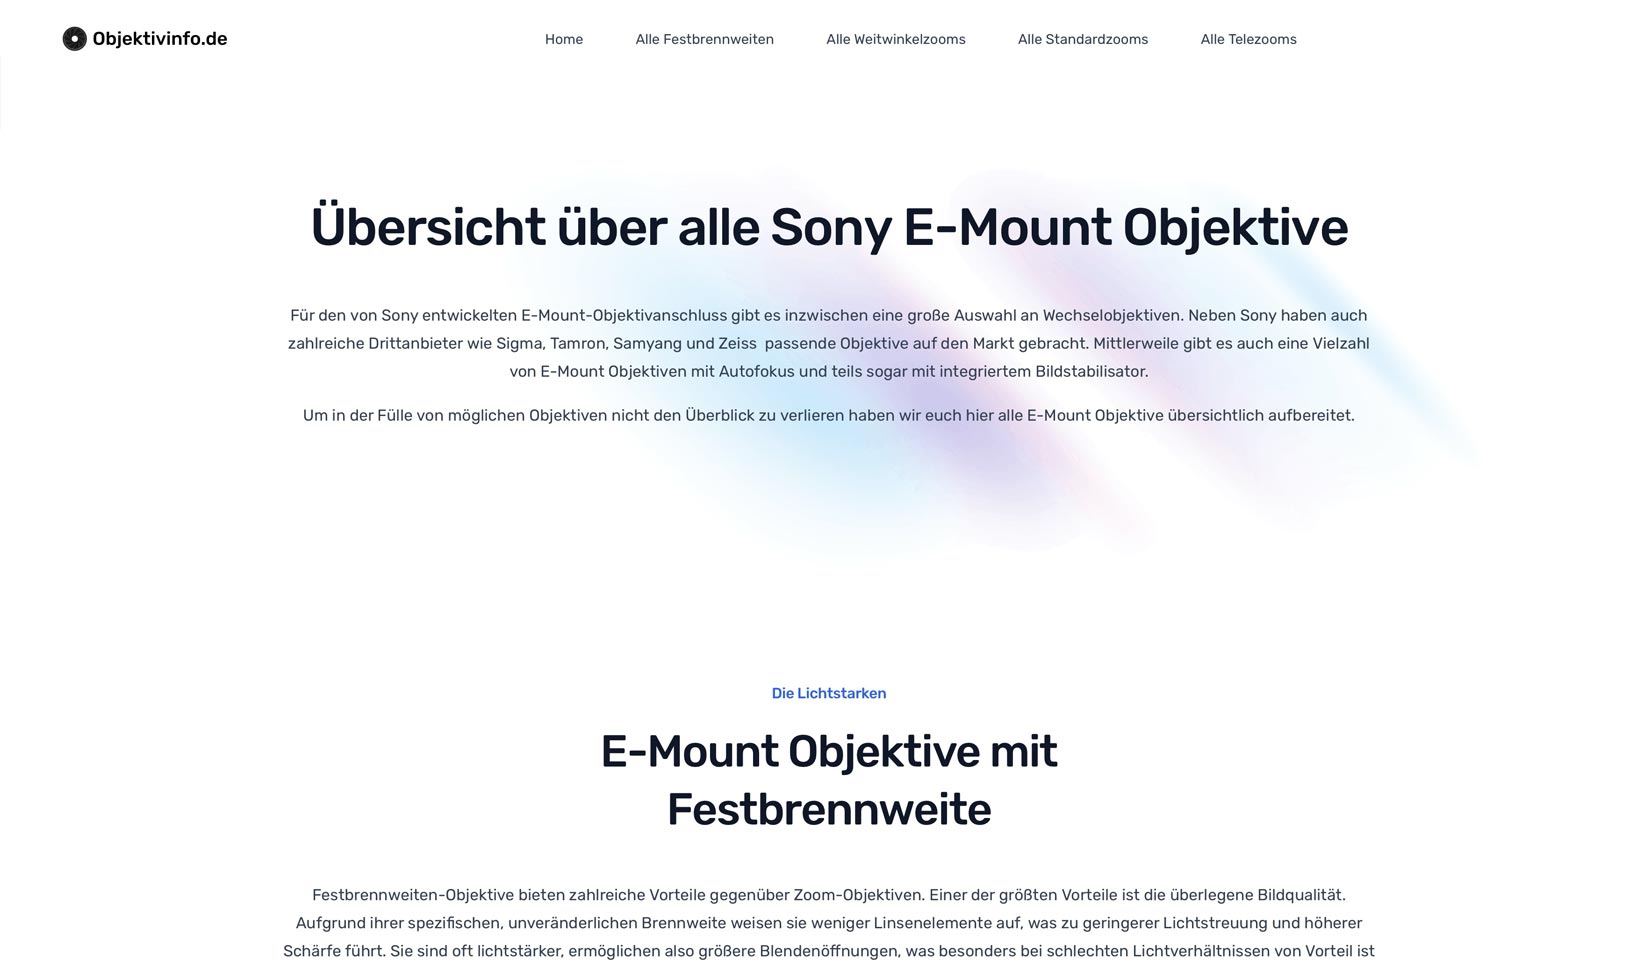 Objektivinfo.de - Übersicht über alle E-Mount Objektive